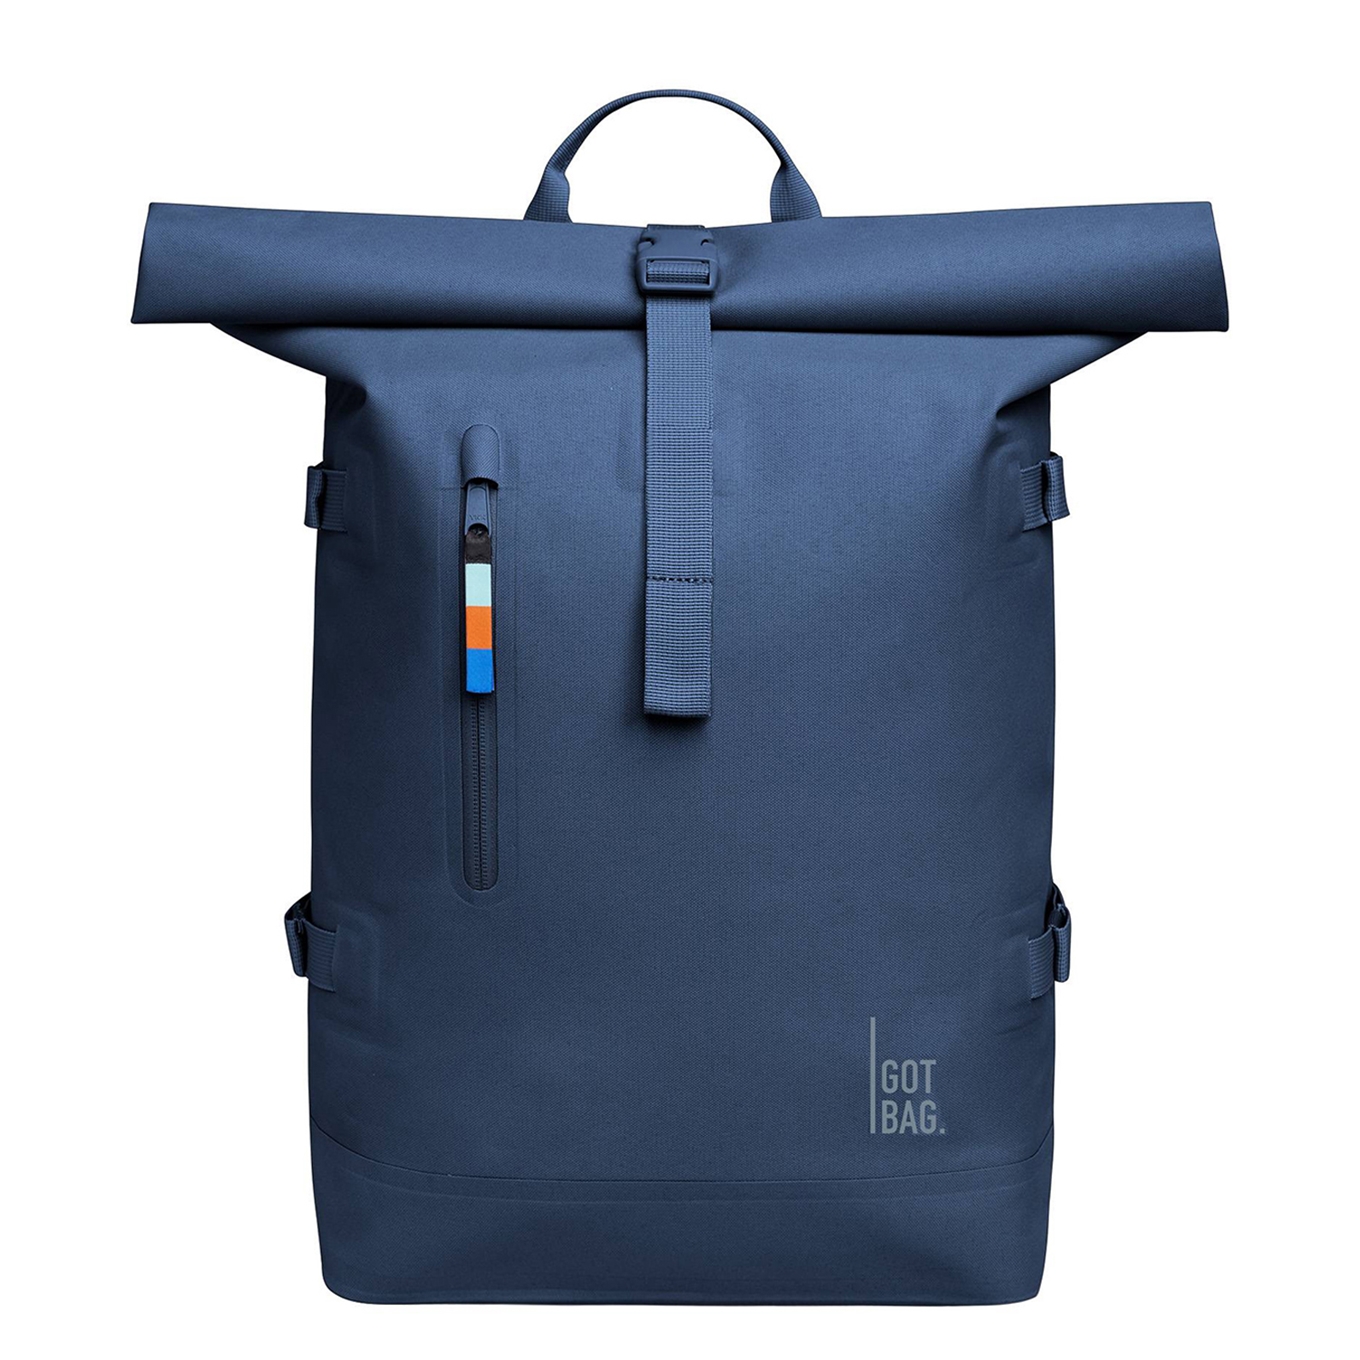 GOT BAG Rolltop 2.0 ocean blue backpack